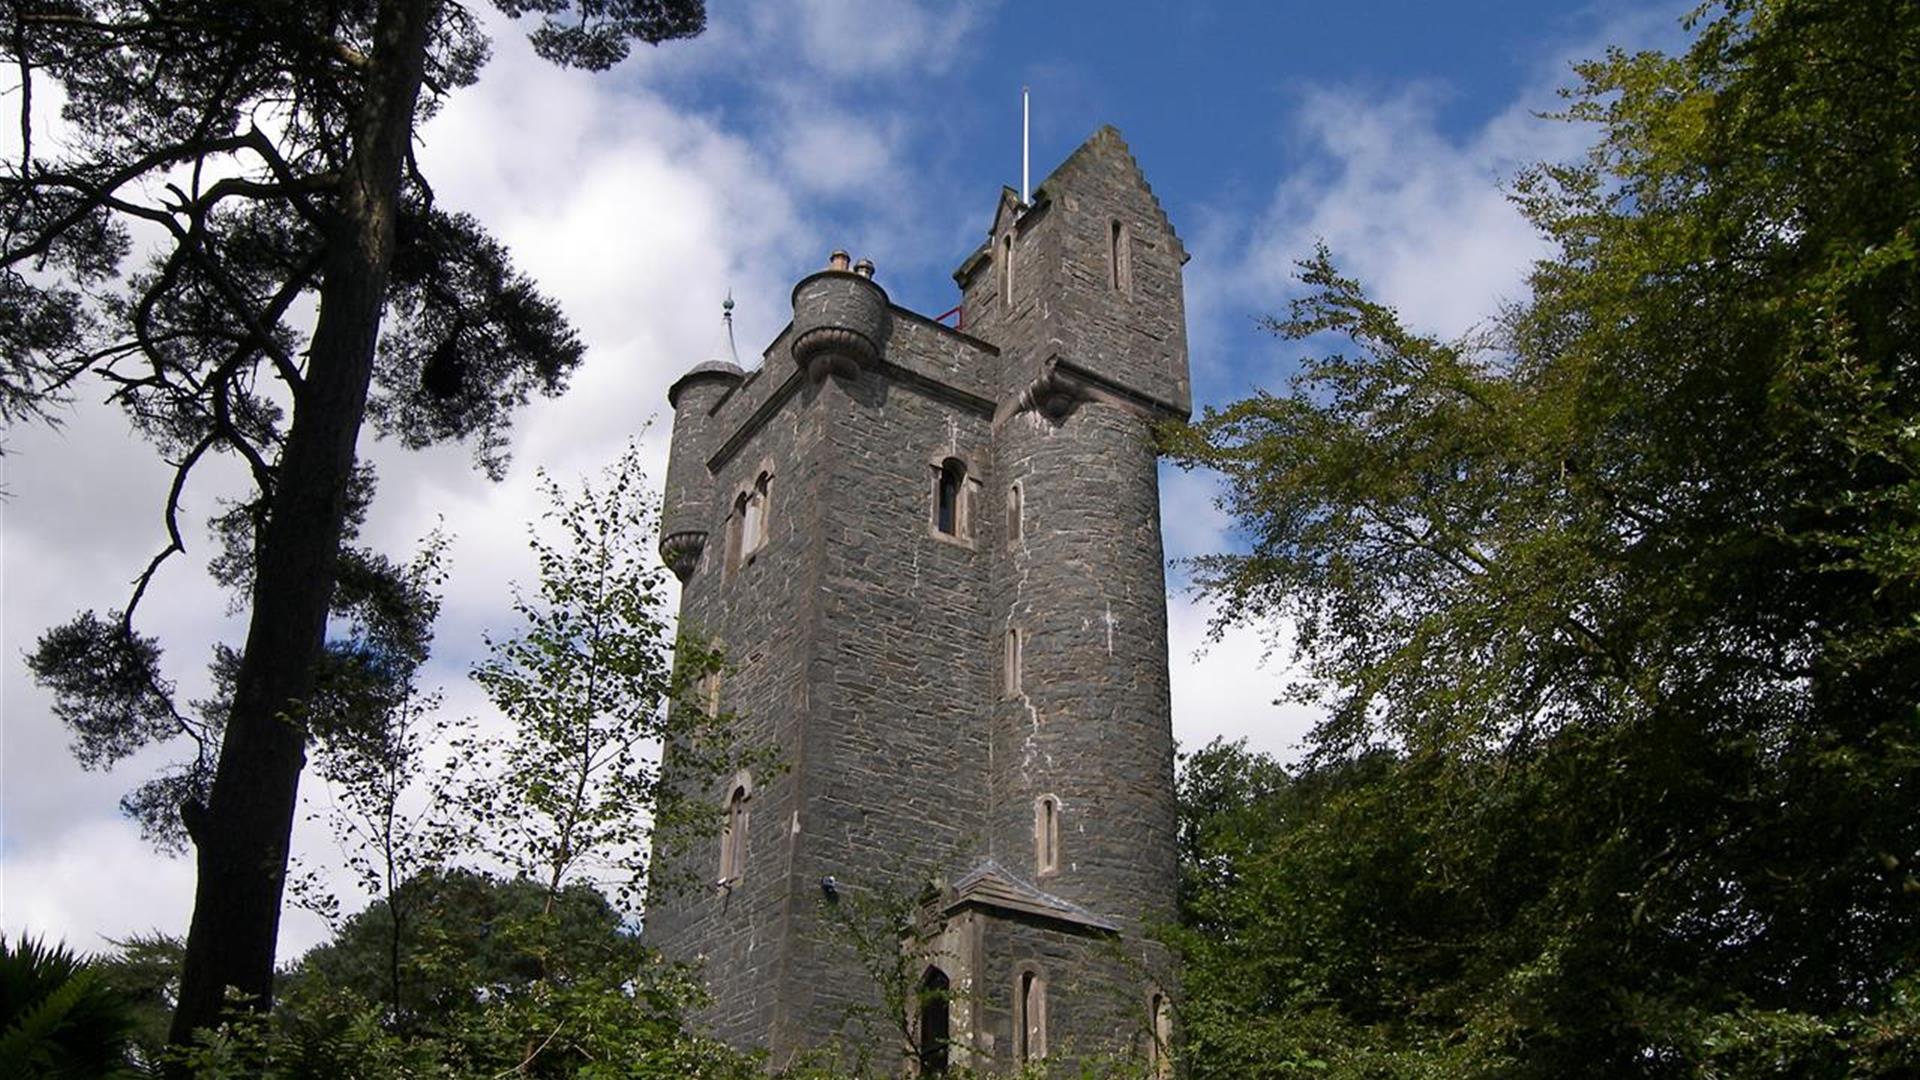 Helen's Tower